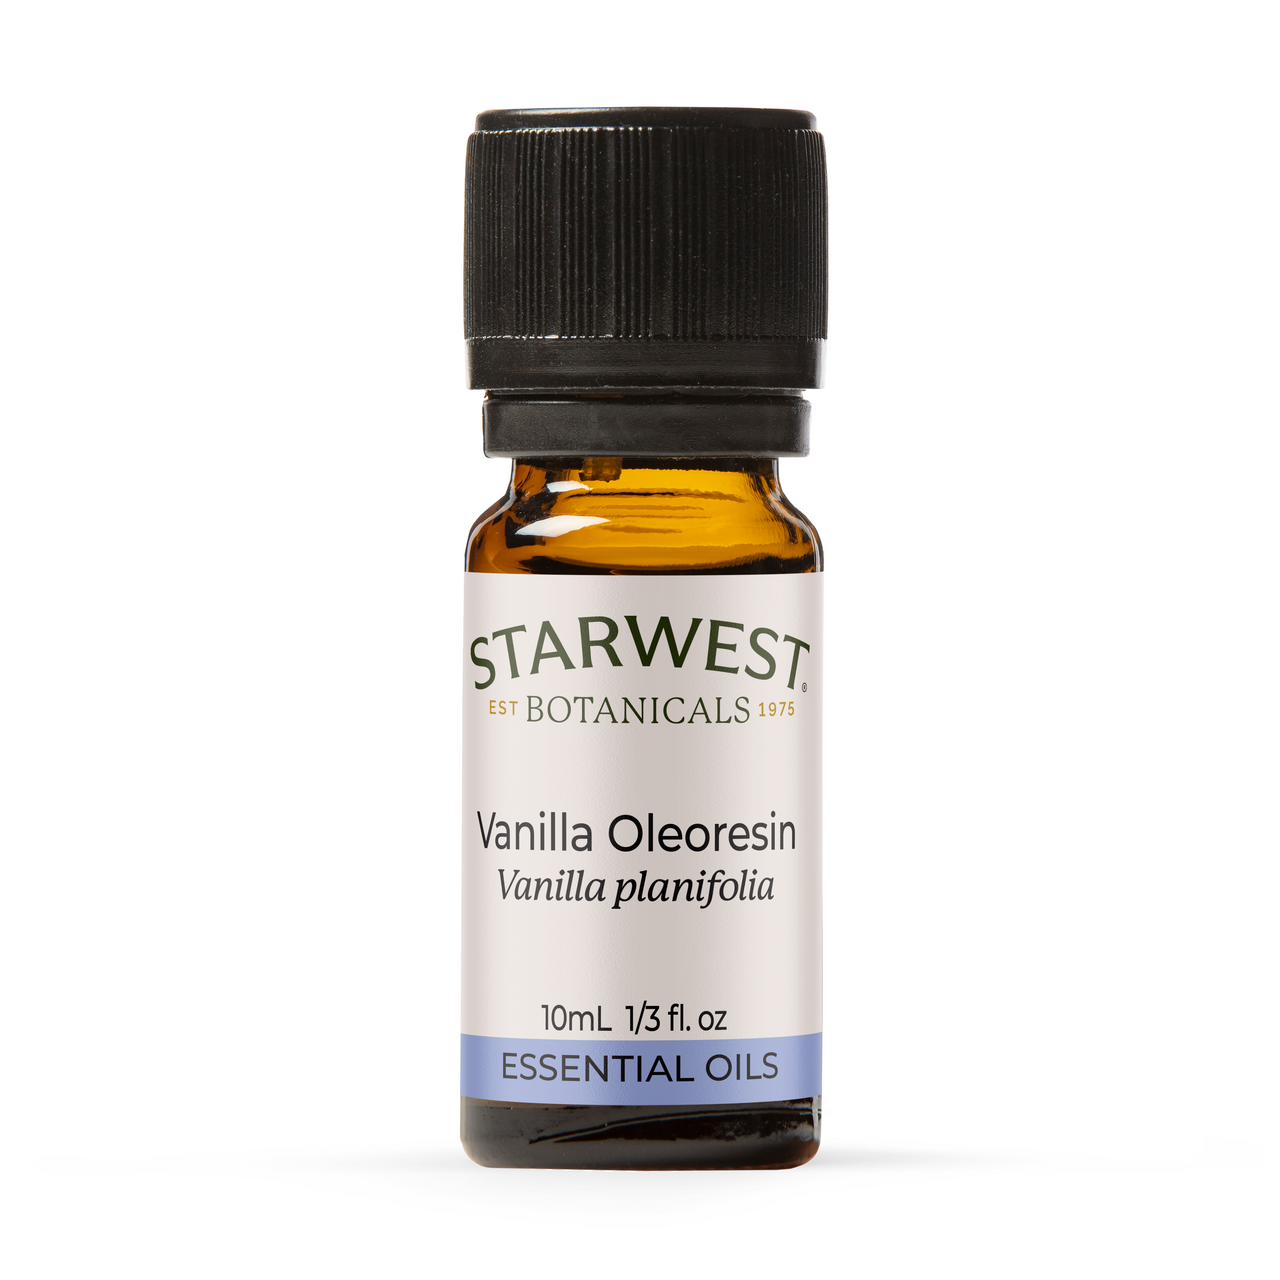 Starwest Botanicals Essential Oil - Vanilla Oleoresin - 1/3 oz (10ml)